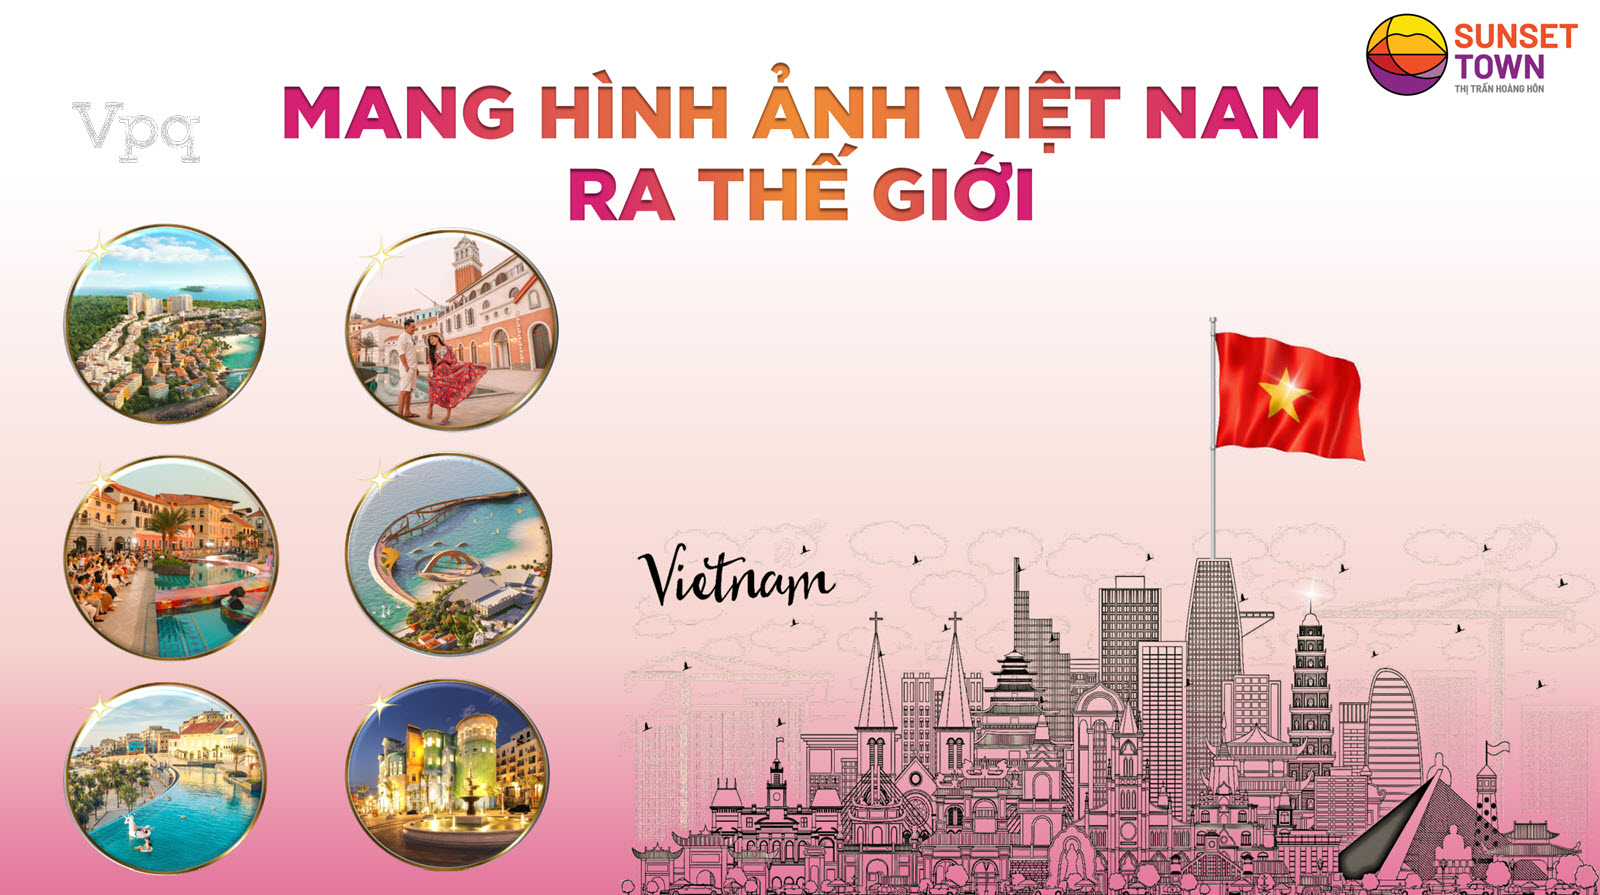 Sunset Town mang hình ảnh Việt Nam ra thế giới